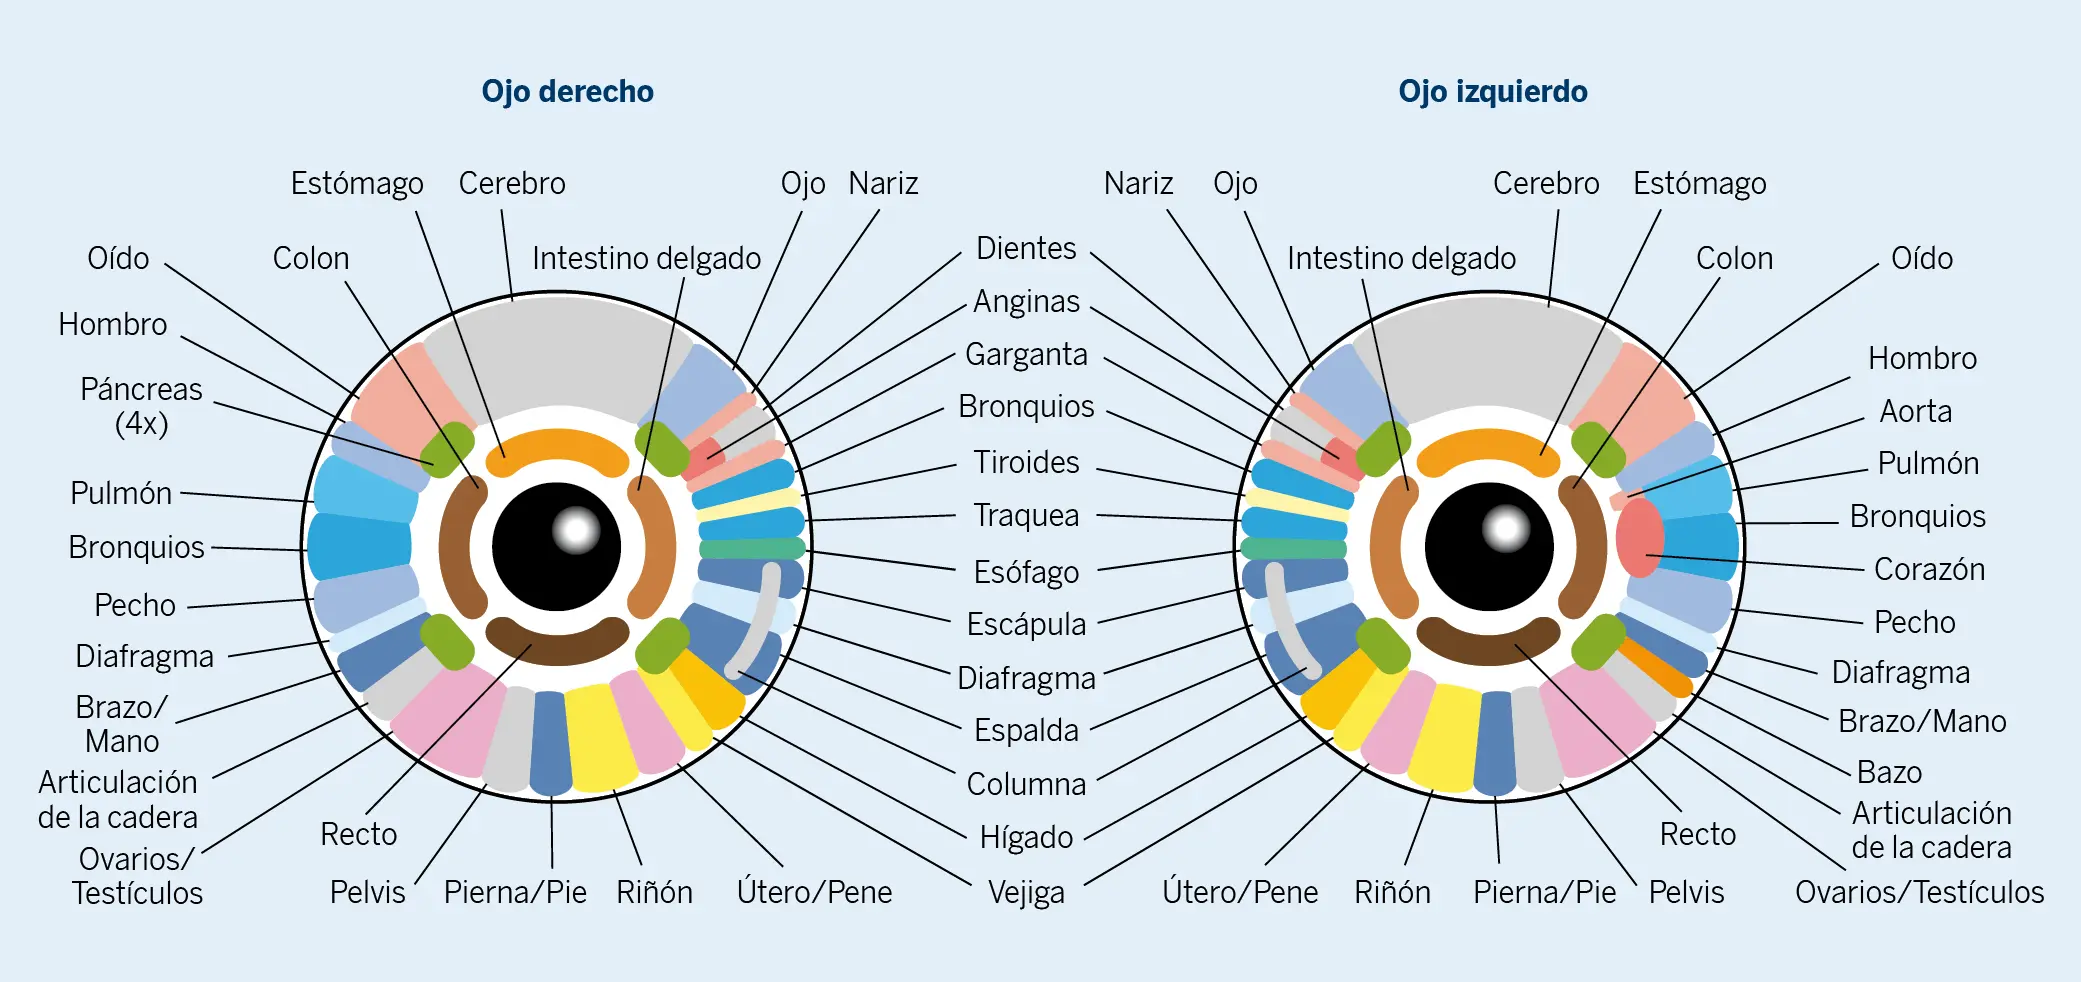 Figura 4. Mapa con las regiones del iris empleado en la iridología para el diagnóstico de las enfermedades